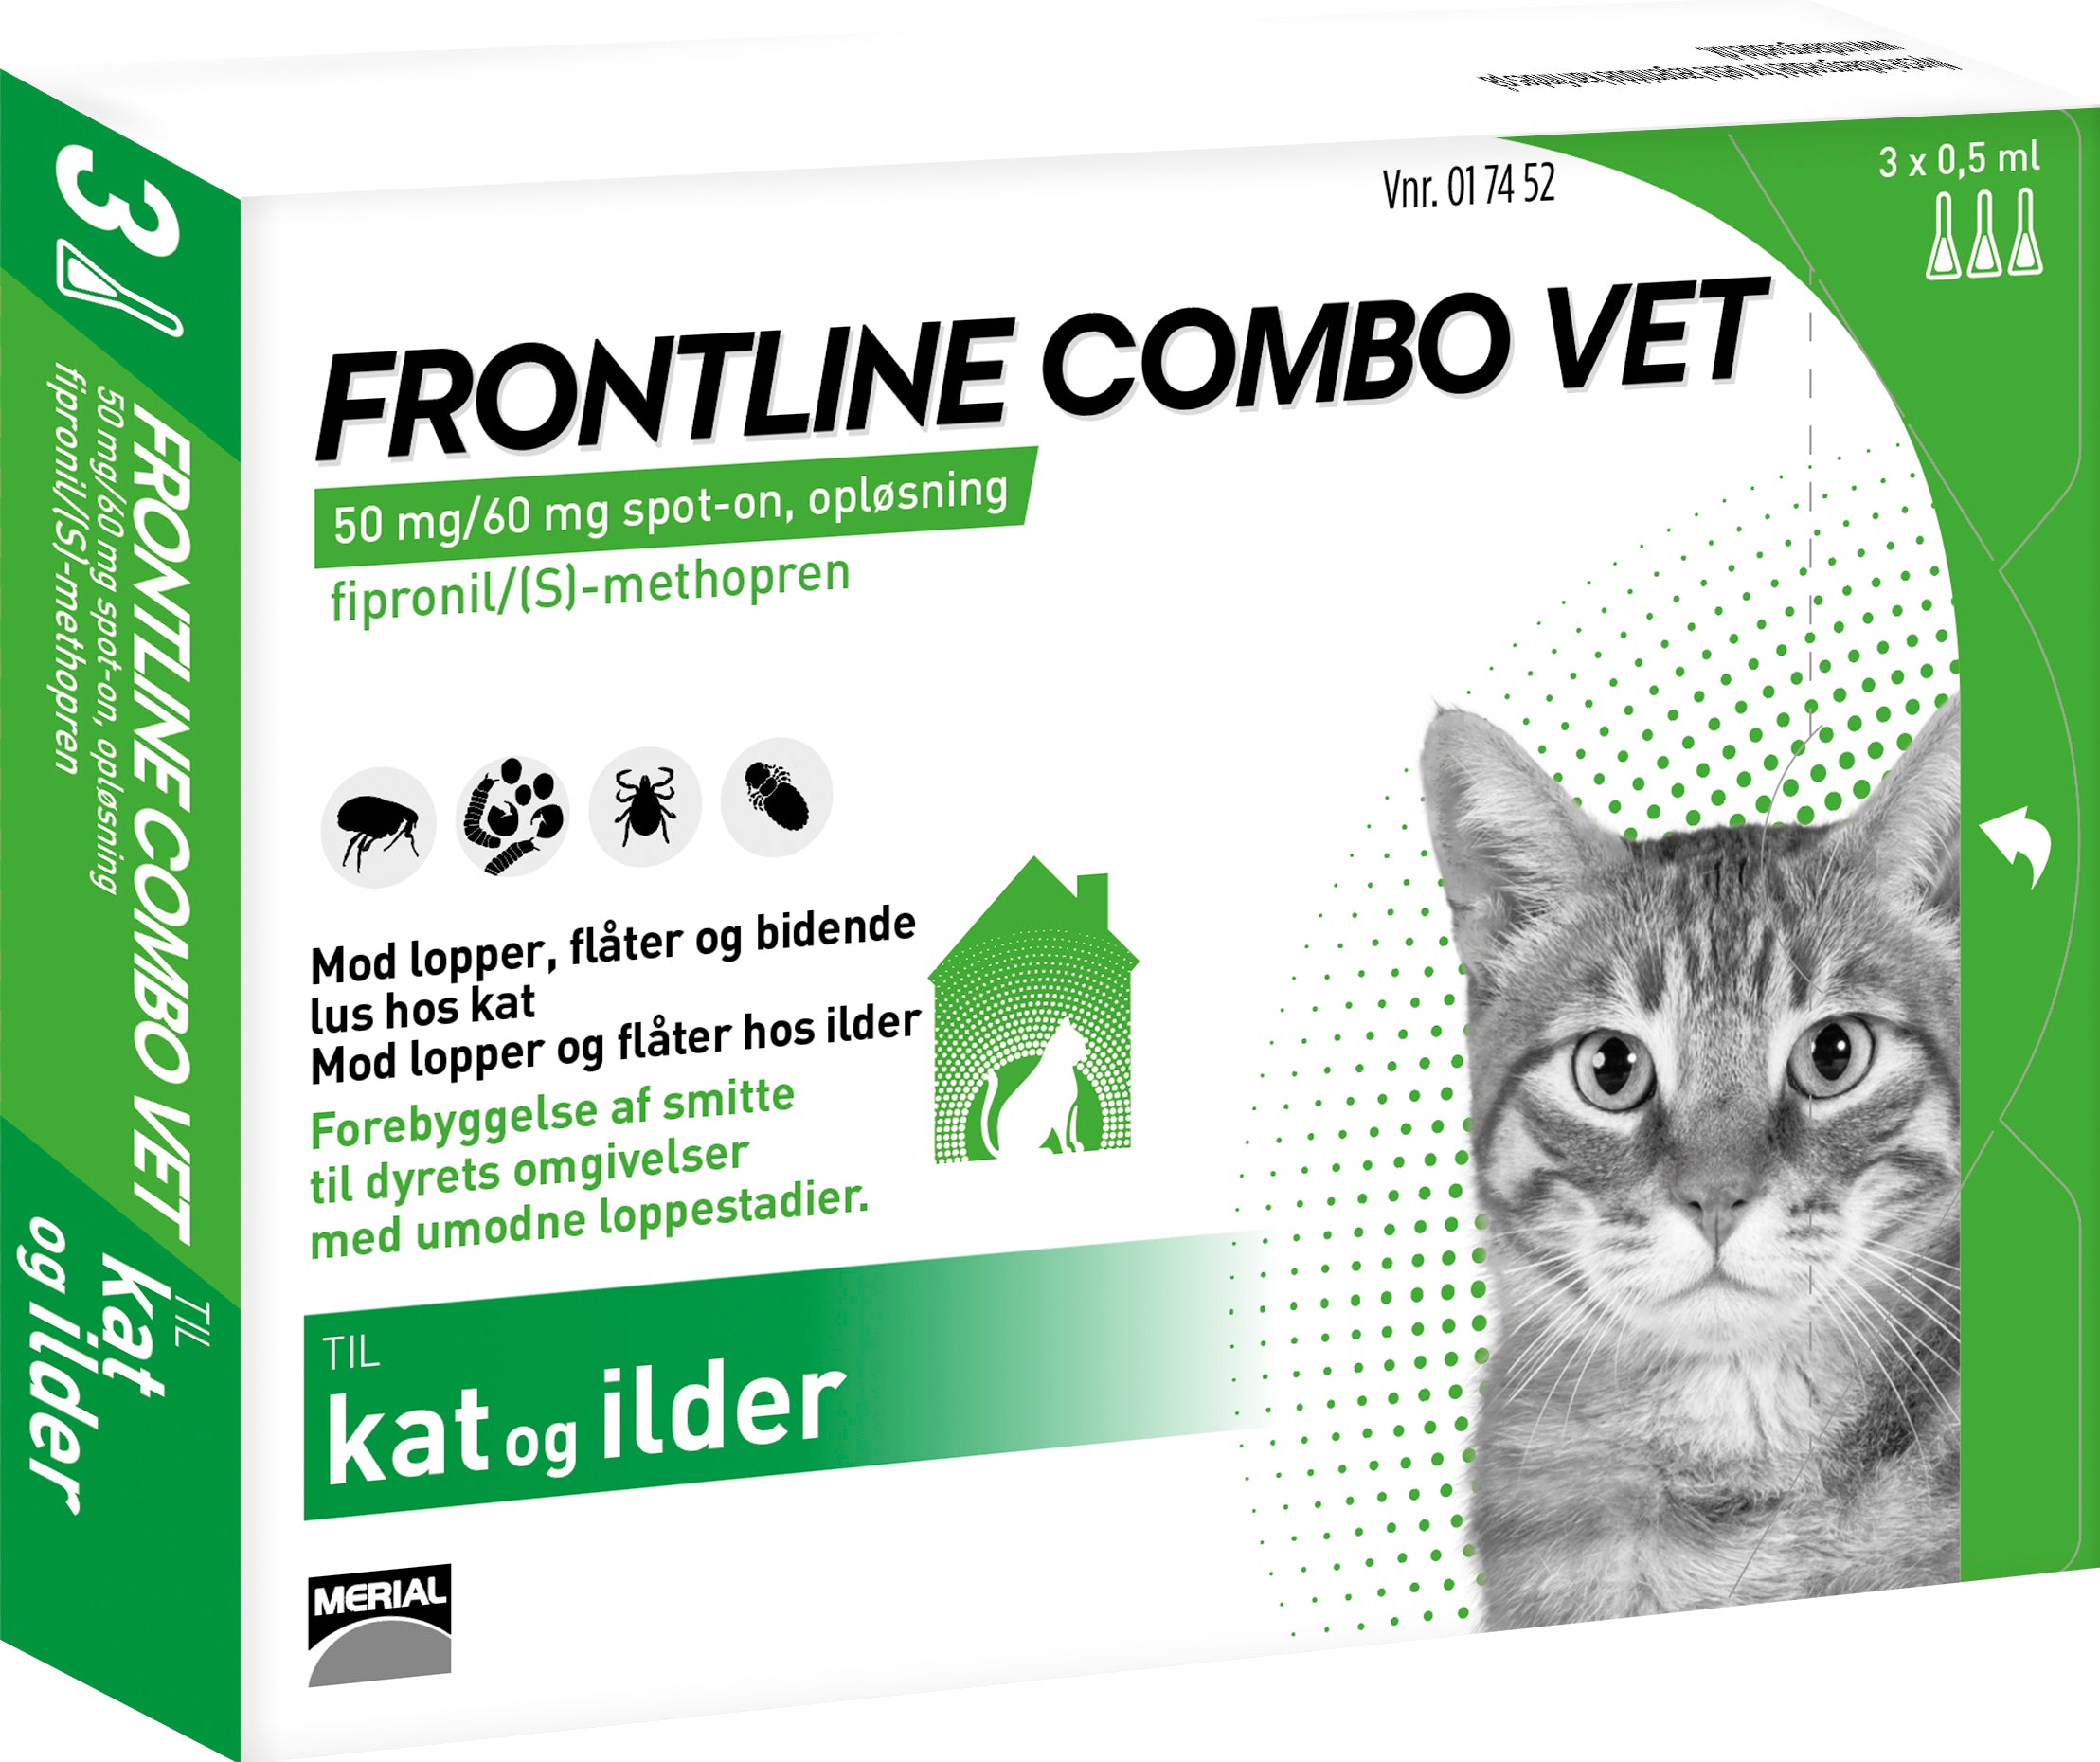 Frontline Vet - Til kat og ilder | Centrum